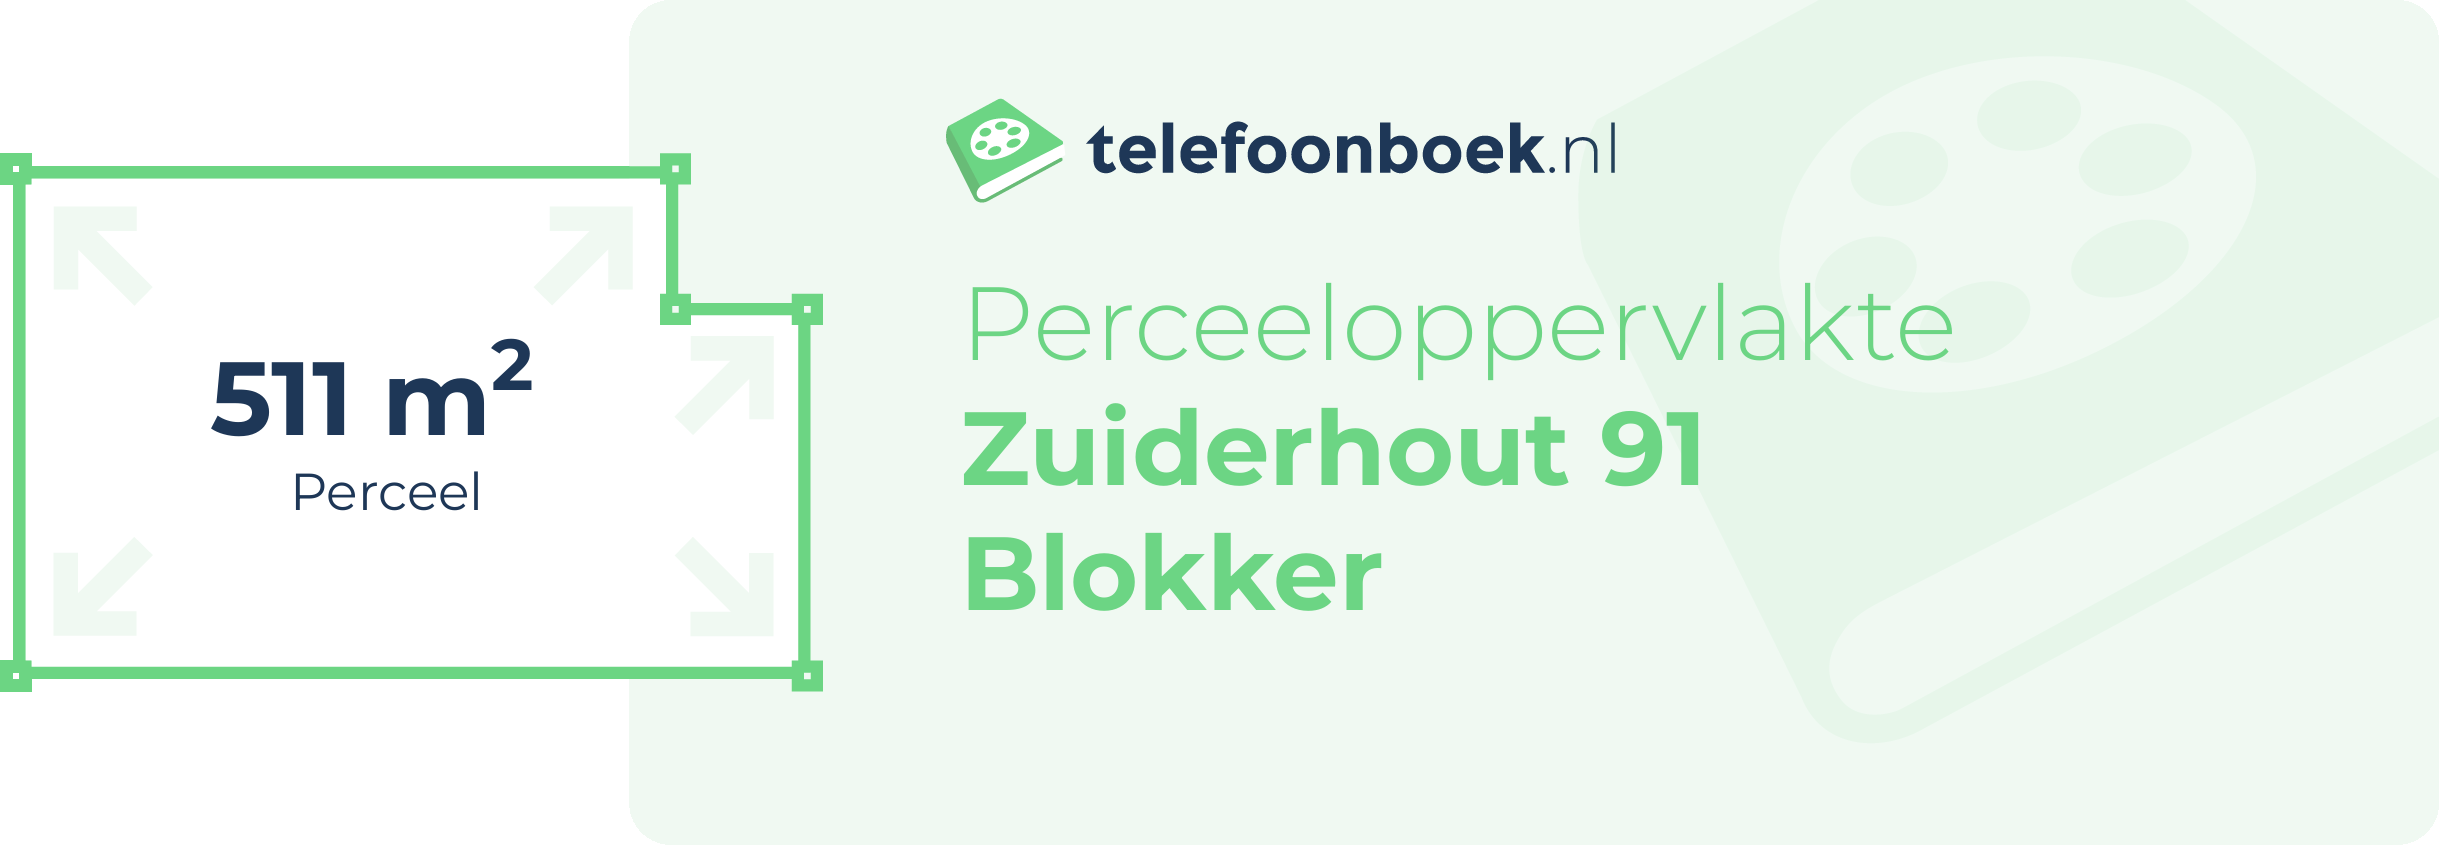 Perceeloppervlakte Zuiderhout 91 Blokker